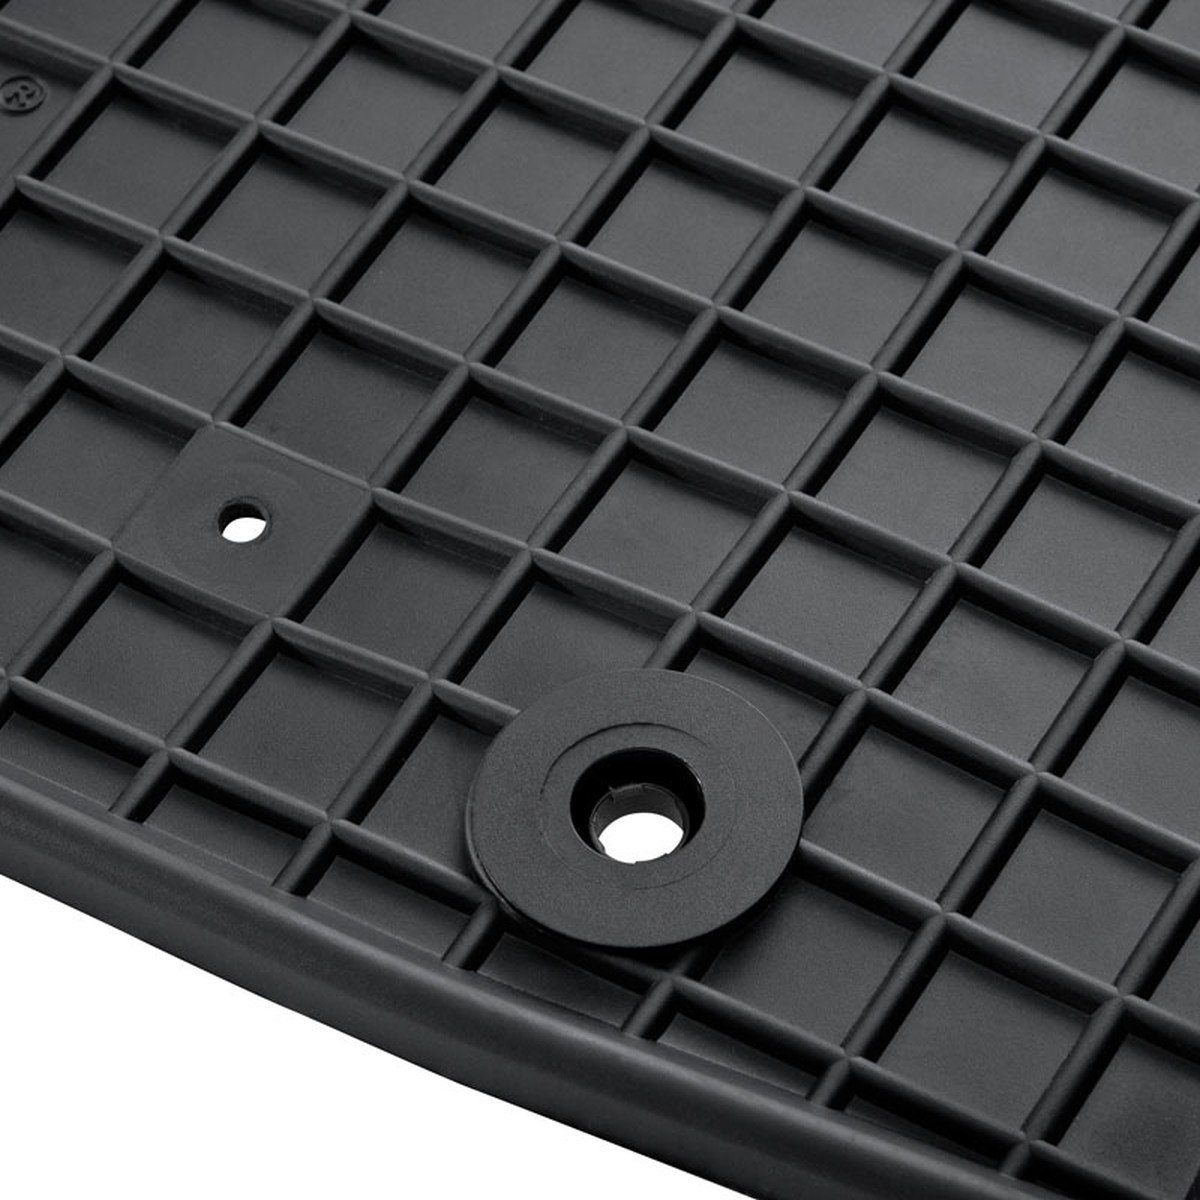 für AZUGA für Gummi-Fußmatten ab Ignis Suzuki Ignis Suzuki 2017, 5-türer Auto-Fußmatten passend